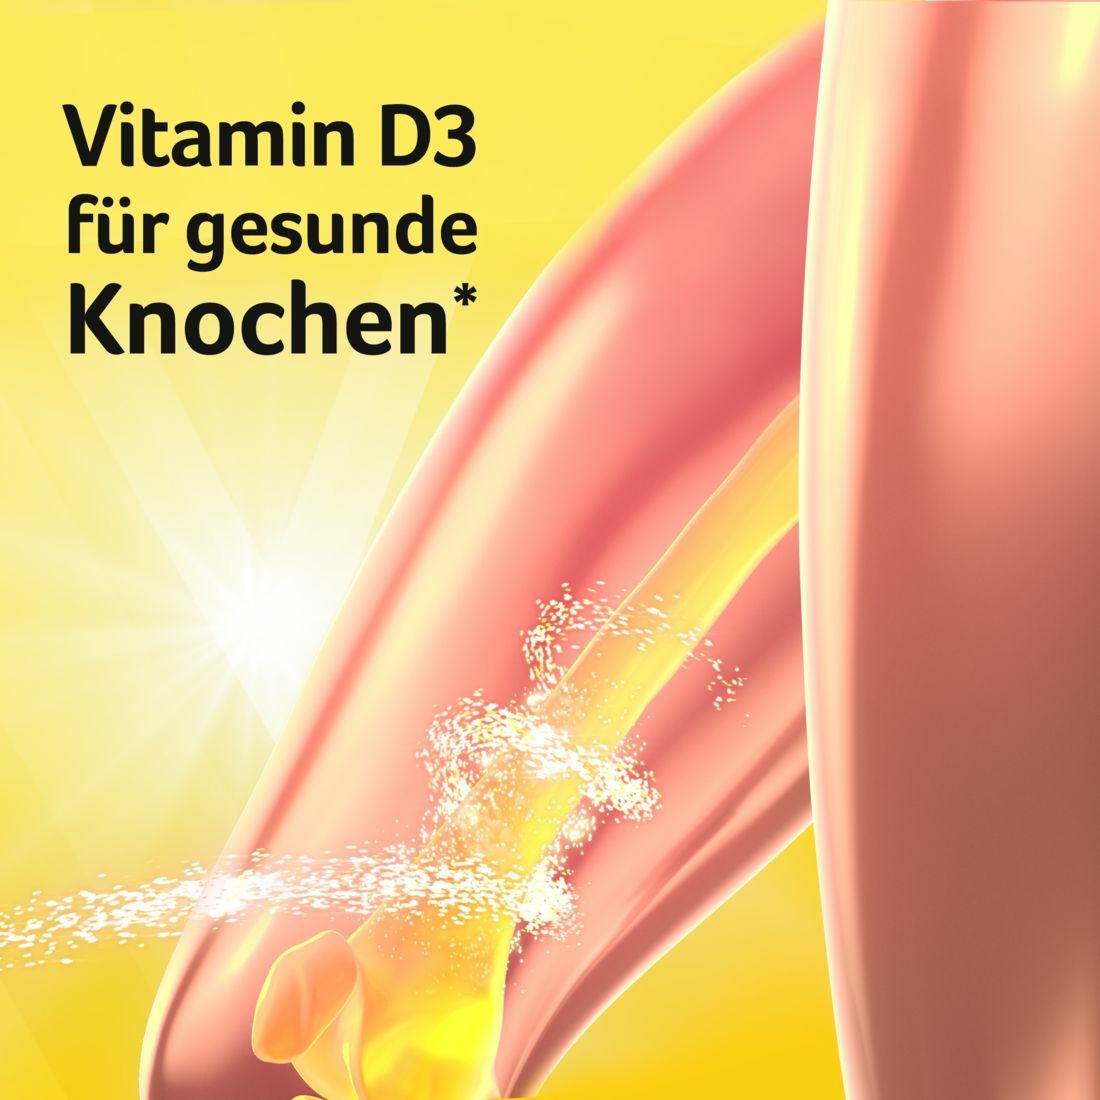 VIGANTOLVIT® Vitamin D3, K2 und Calcium